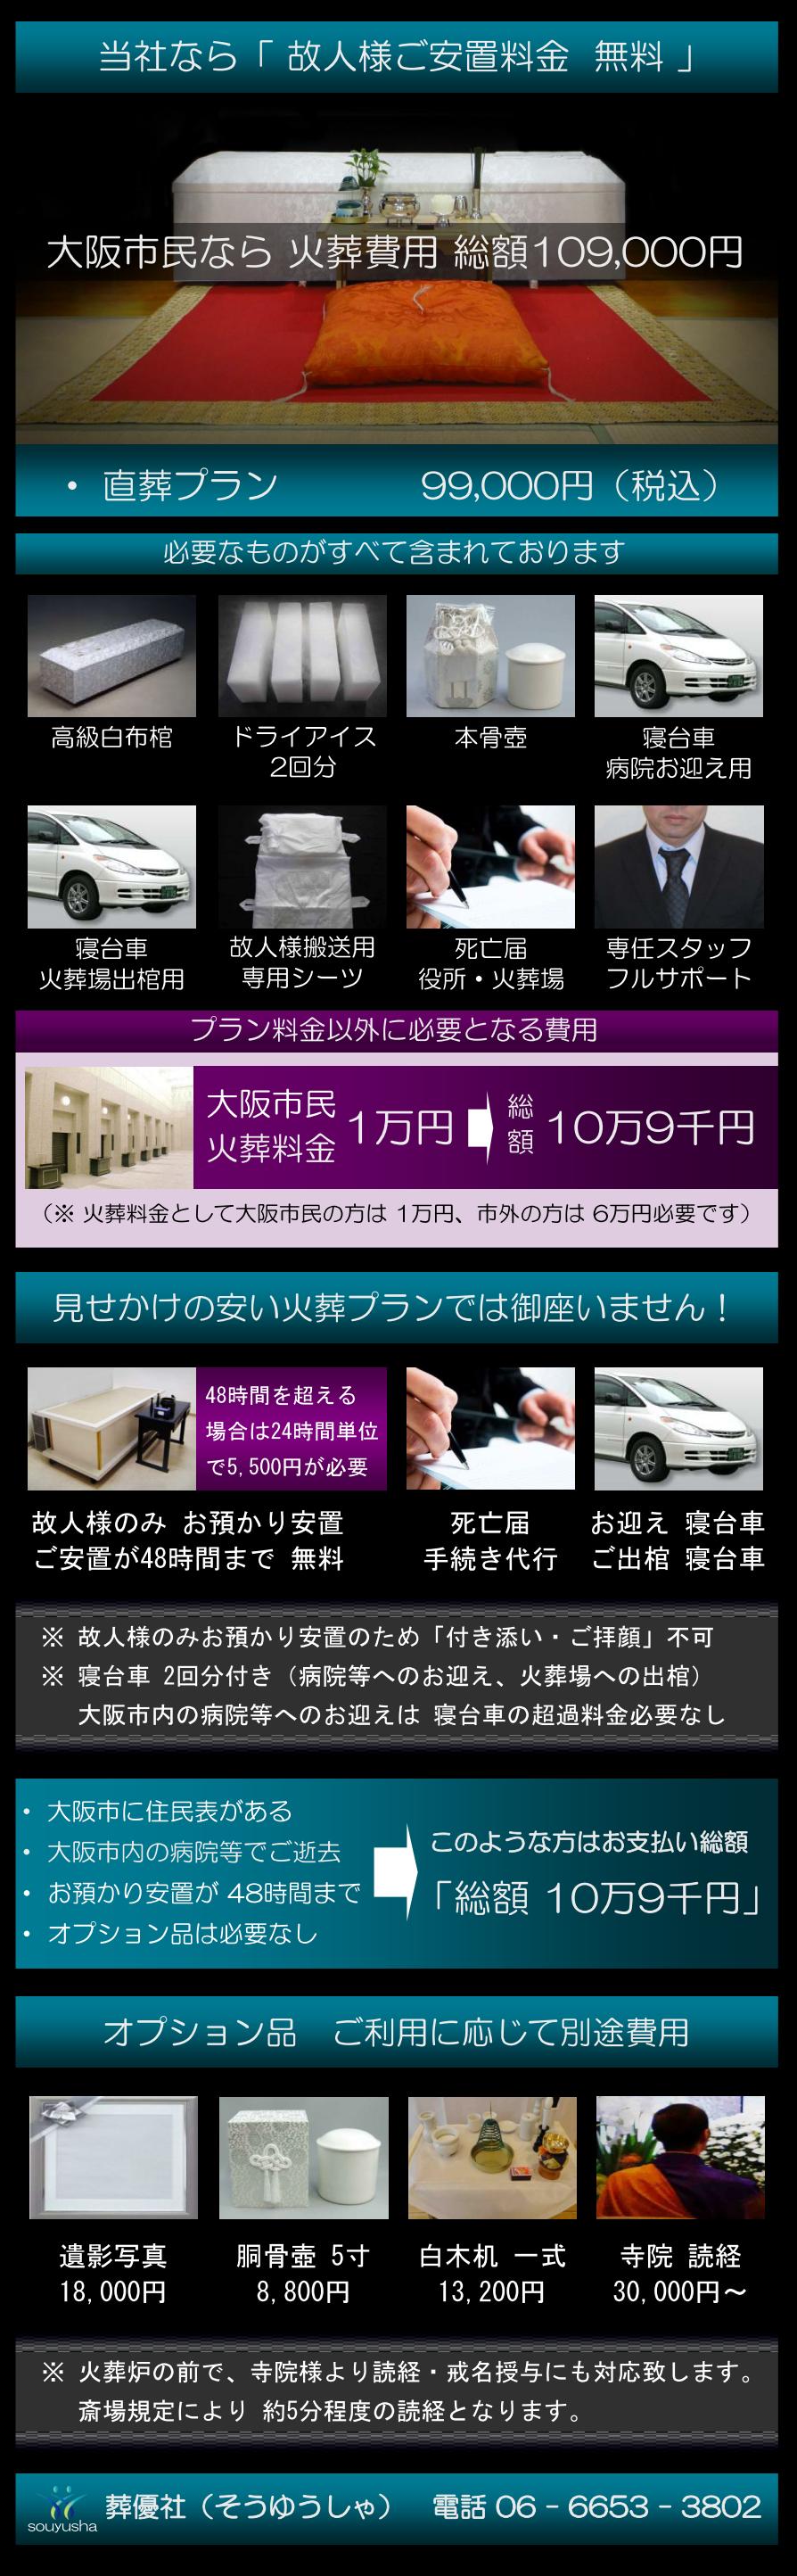 大阪での直葬を追加費用なしの総額9万9千円で火葬致します